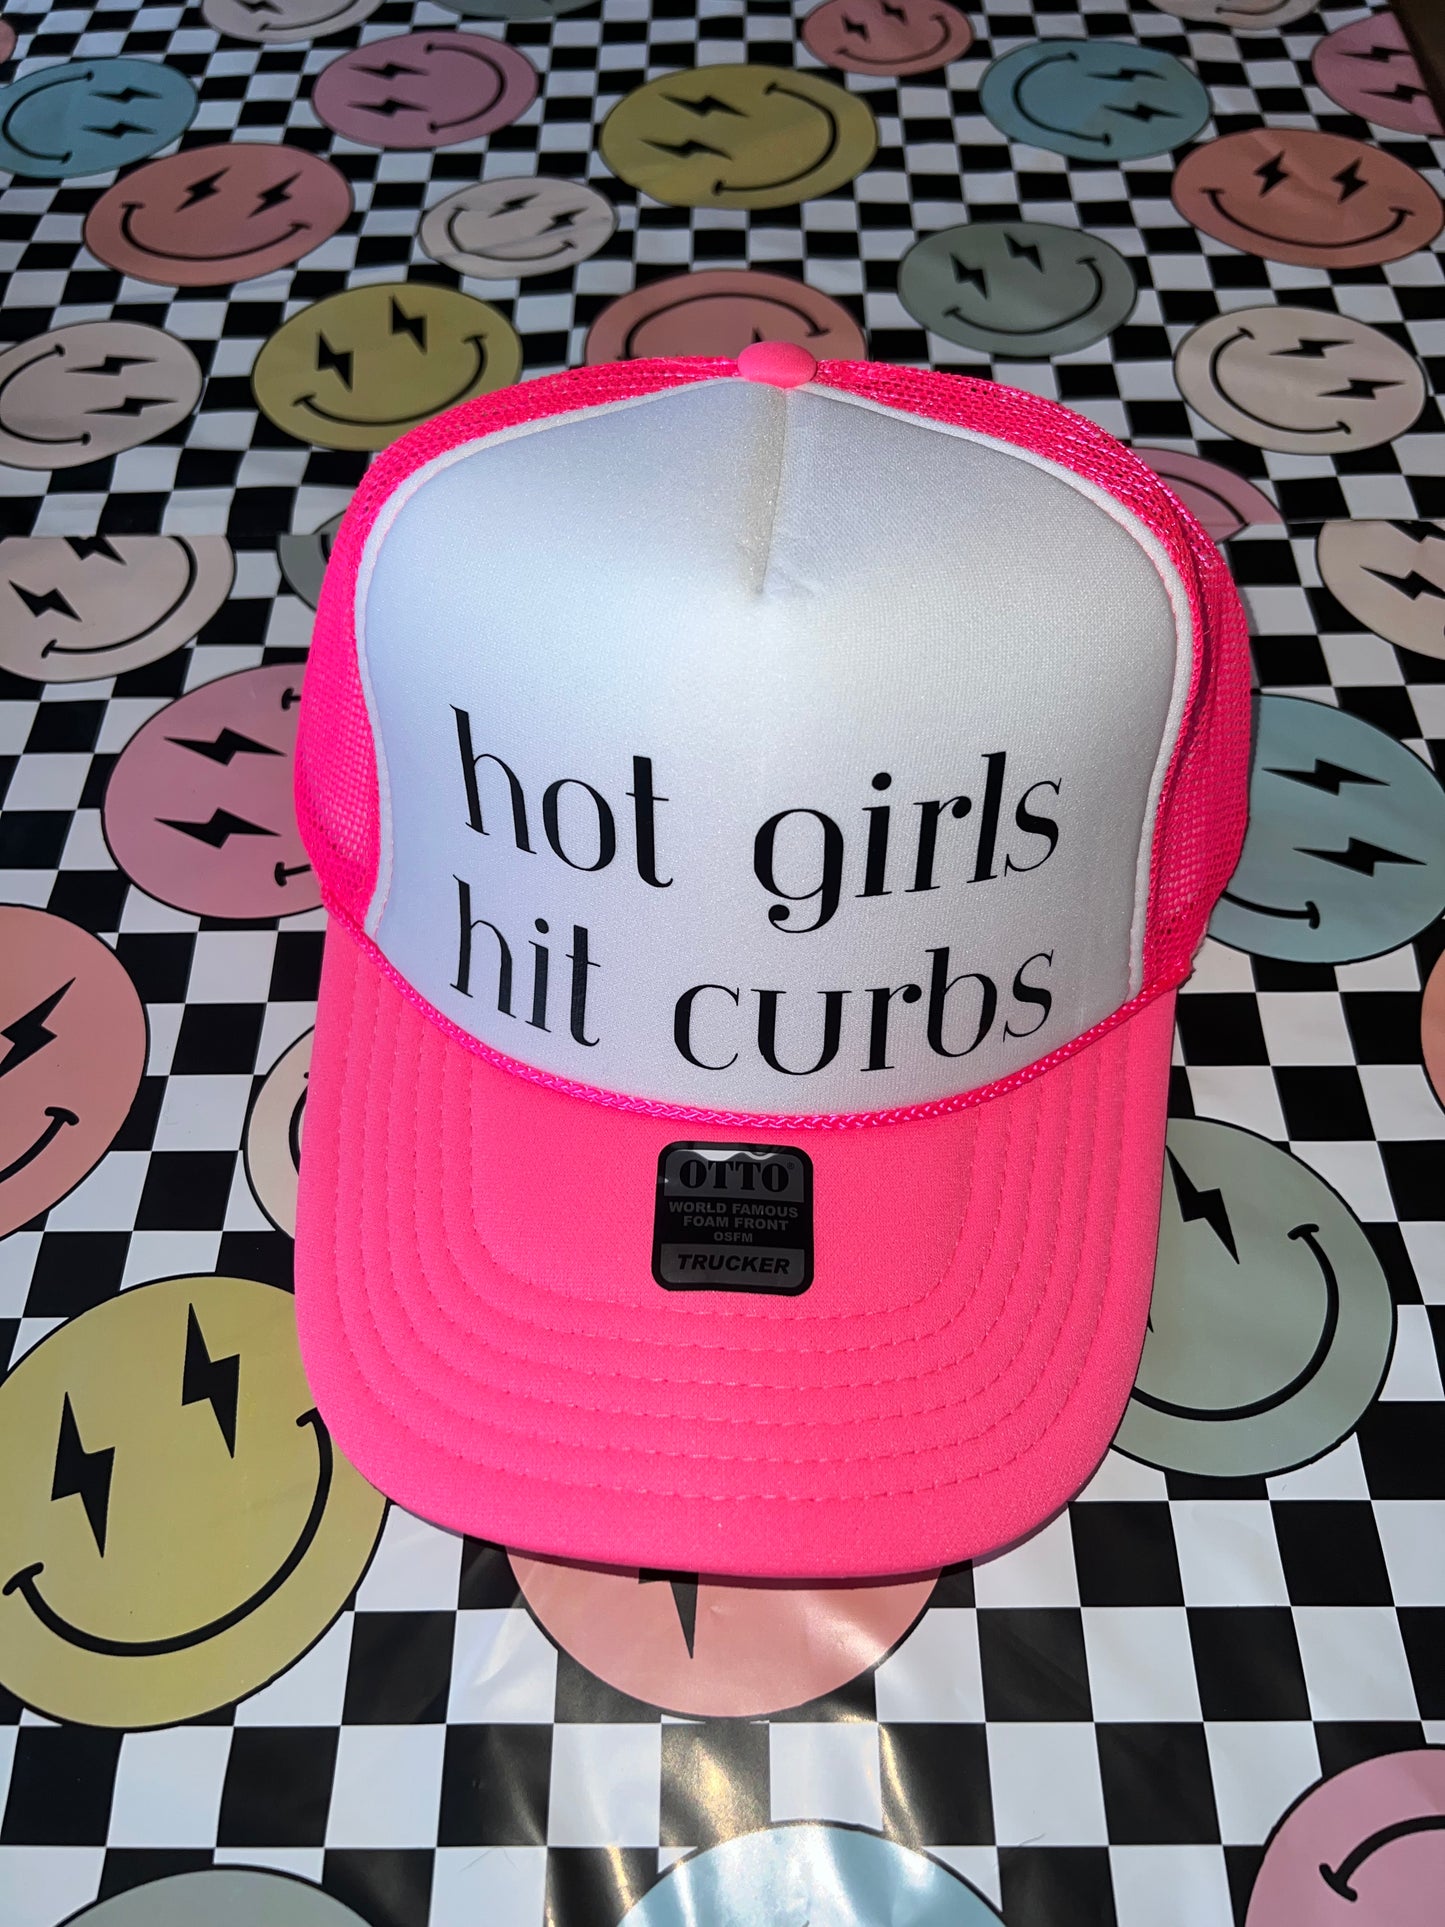 Hot girls hit curbs